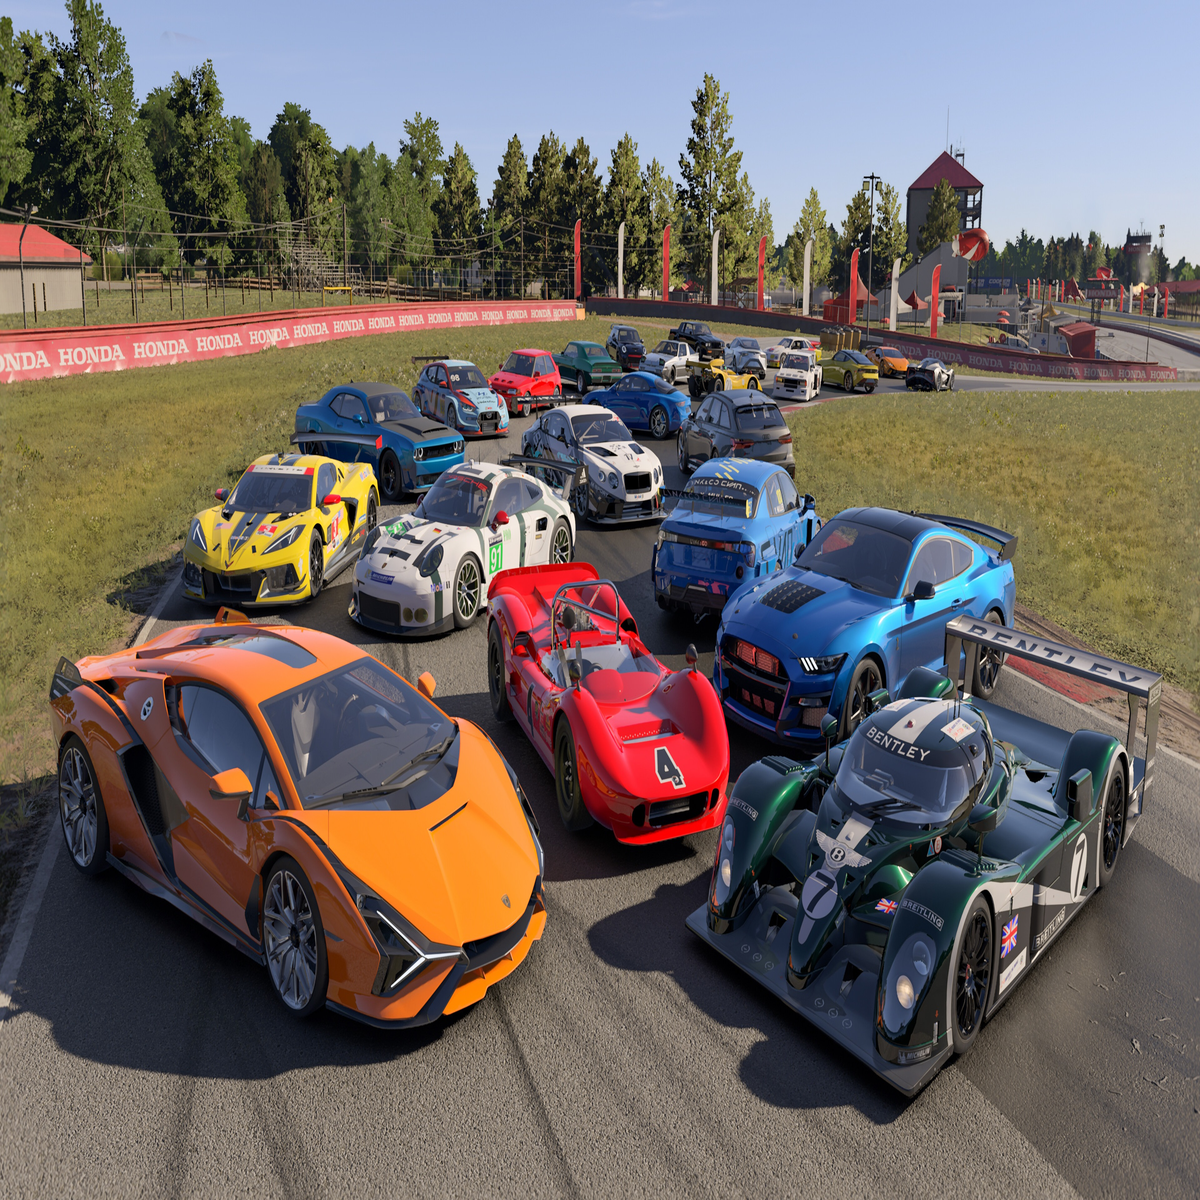 Análise: Forza Motorsport é melhor jogo de corrida do ano